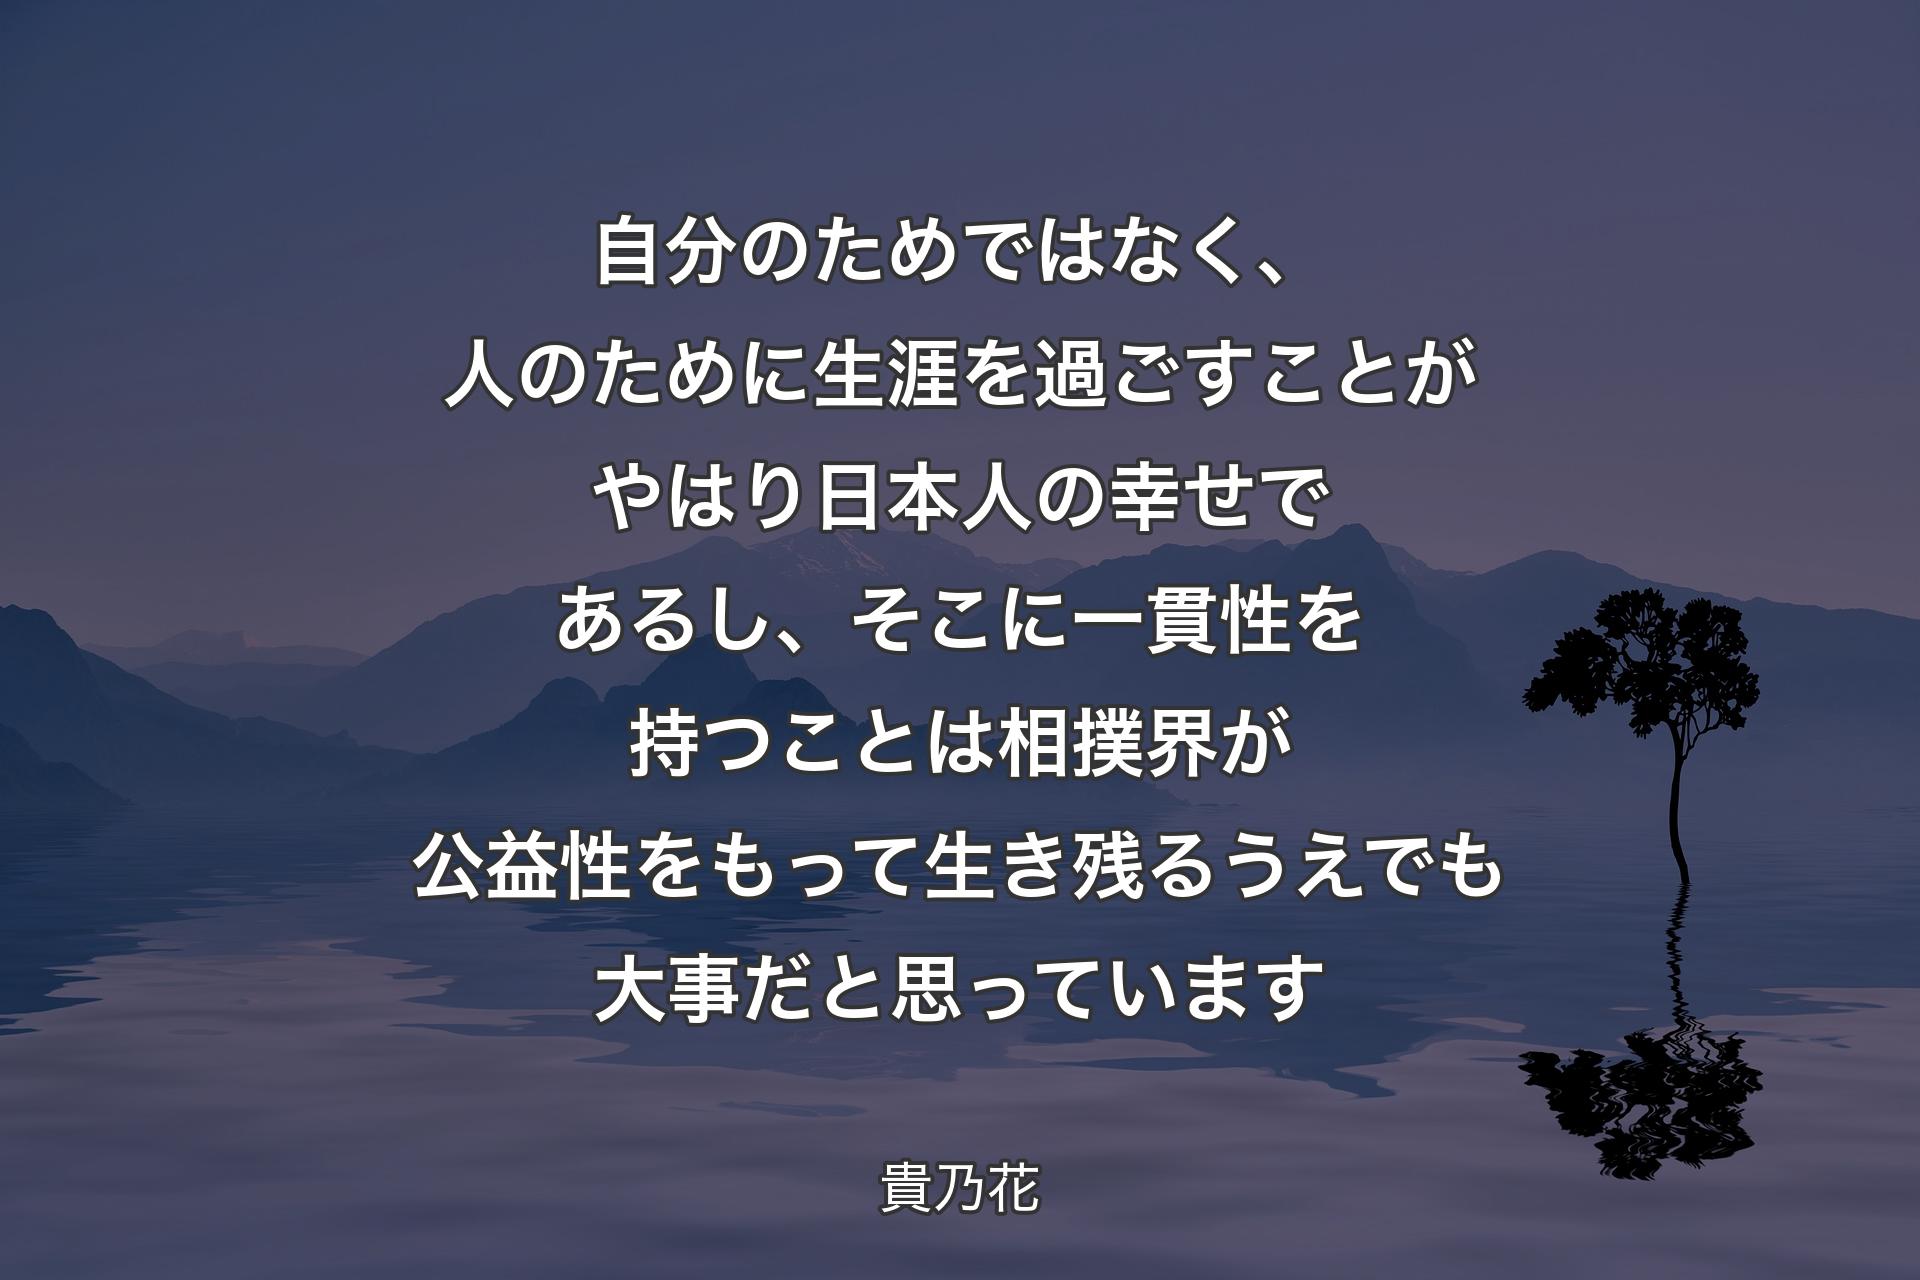 自分のためではなく、人のために生涯��を過ごすことがやはり日本人の幸せであるし、そこに一貫性を持つことは相撲界が公益性をもって生き残るうえでも大事だと思っています - 貴乃花